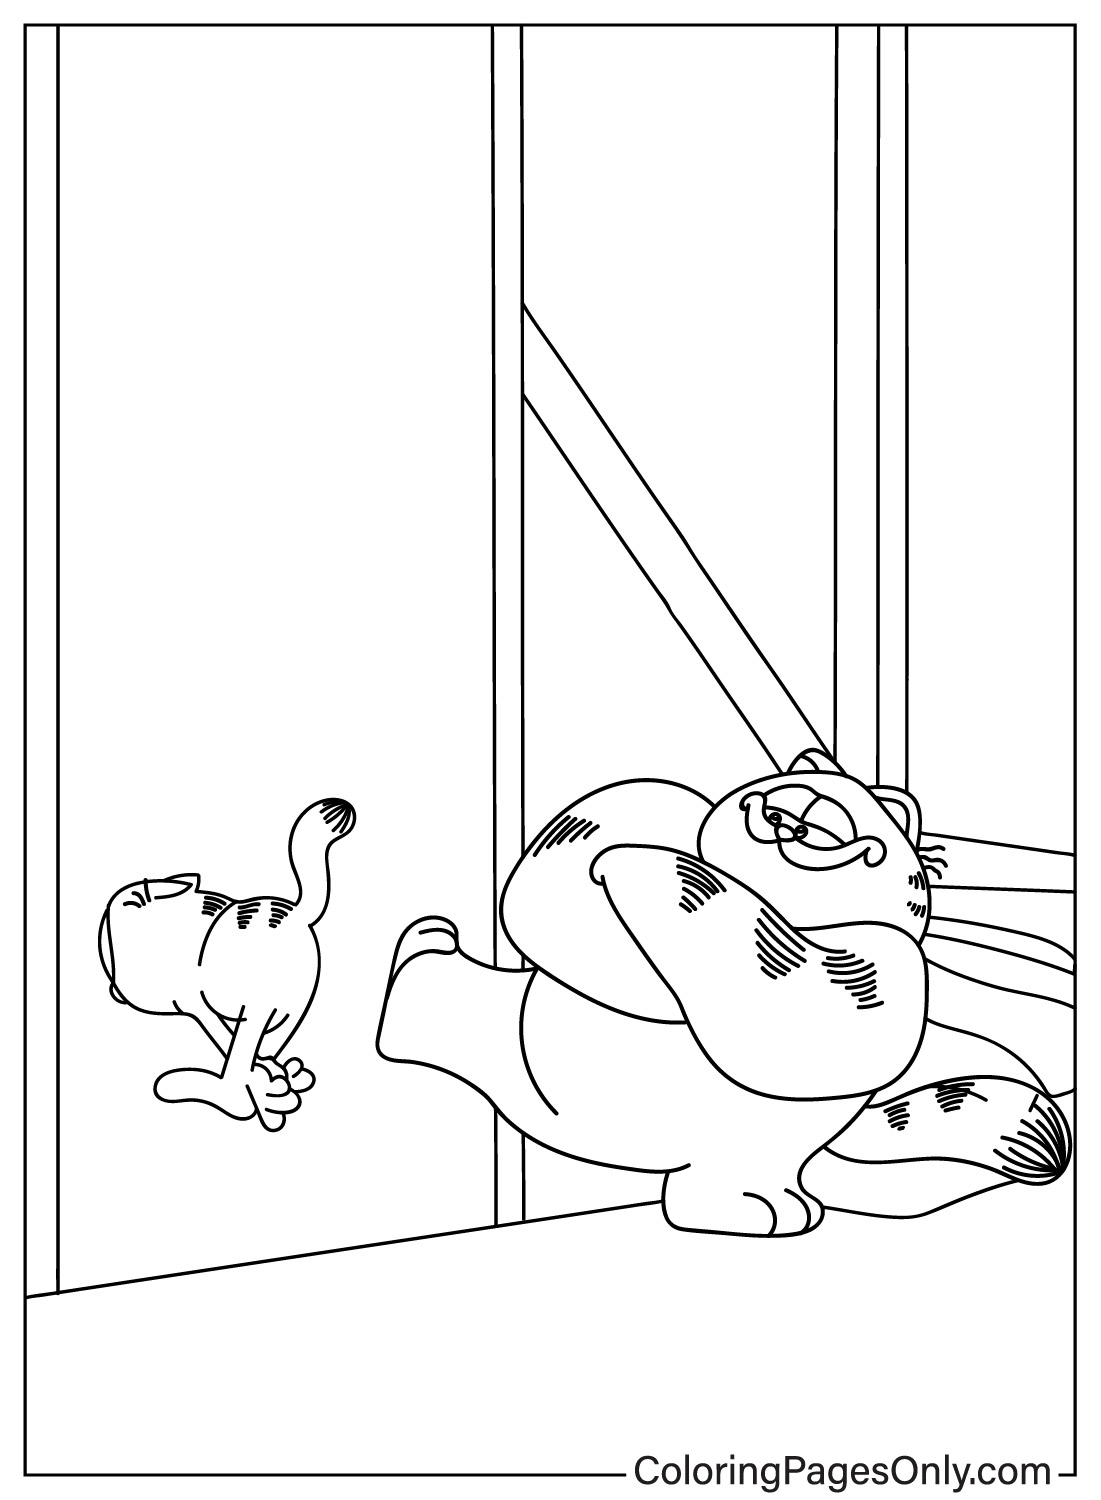 Página para colorear de Garfield y Vic gratis de Garfield